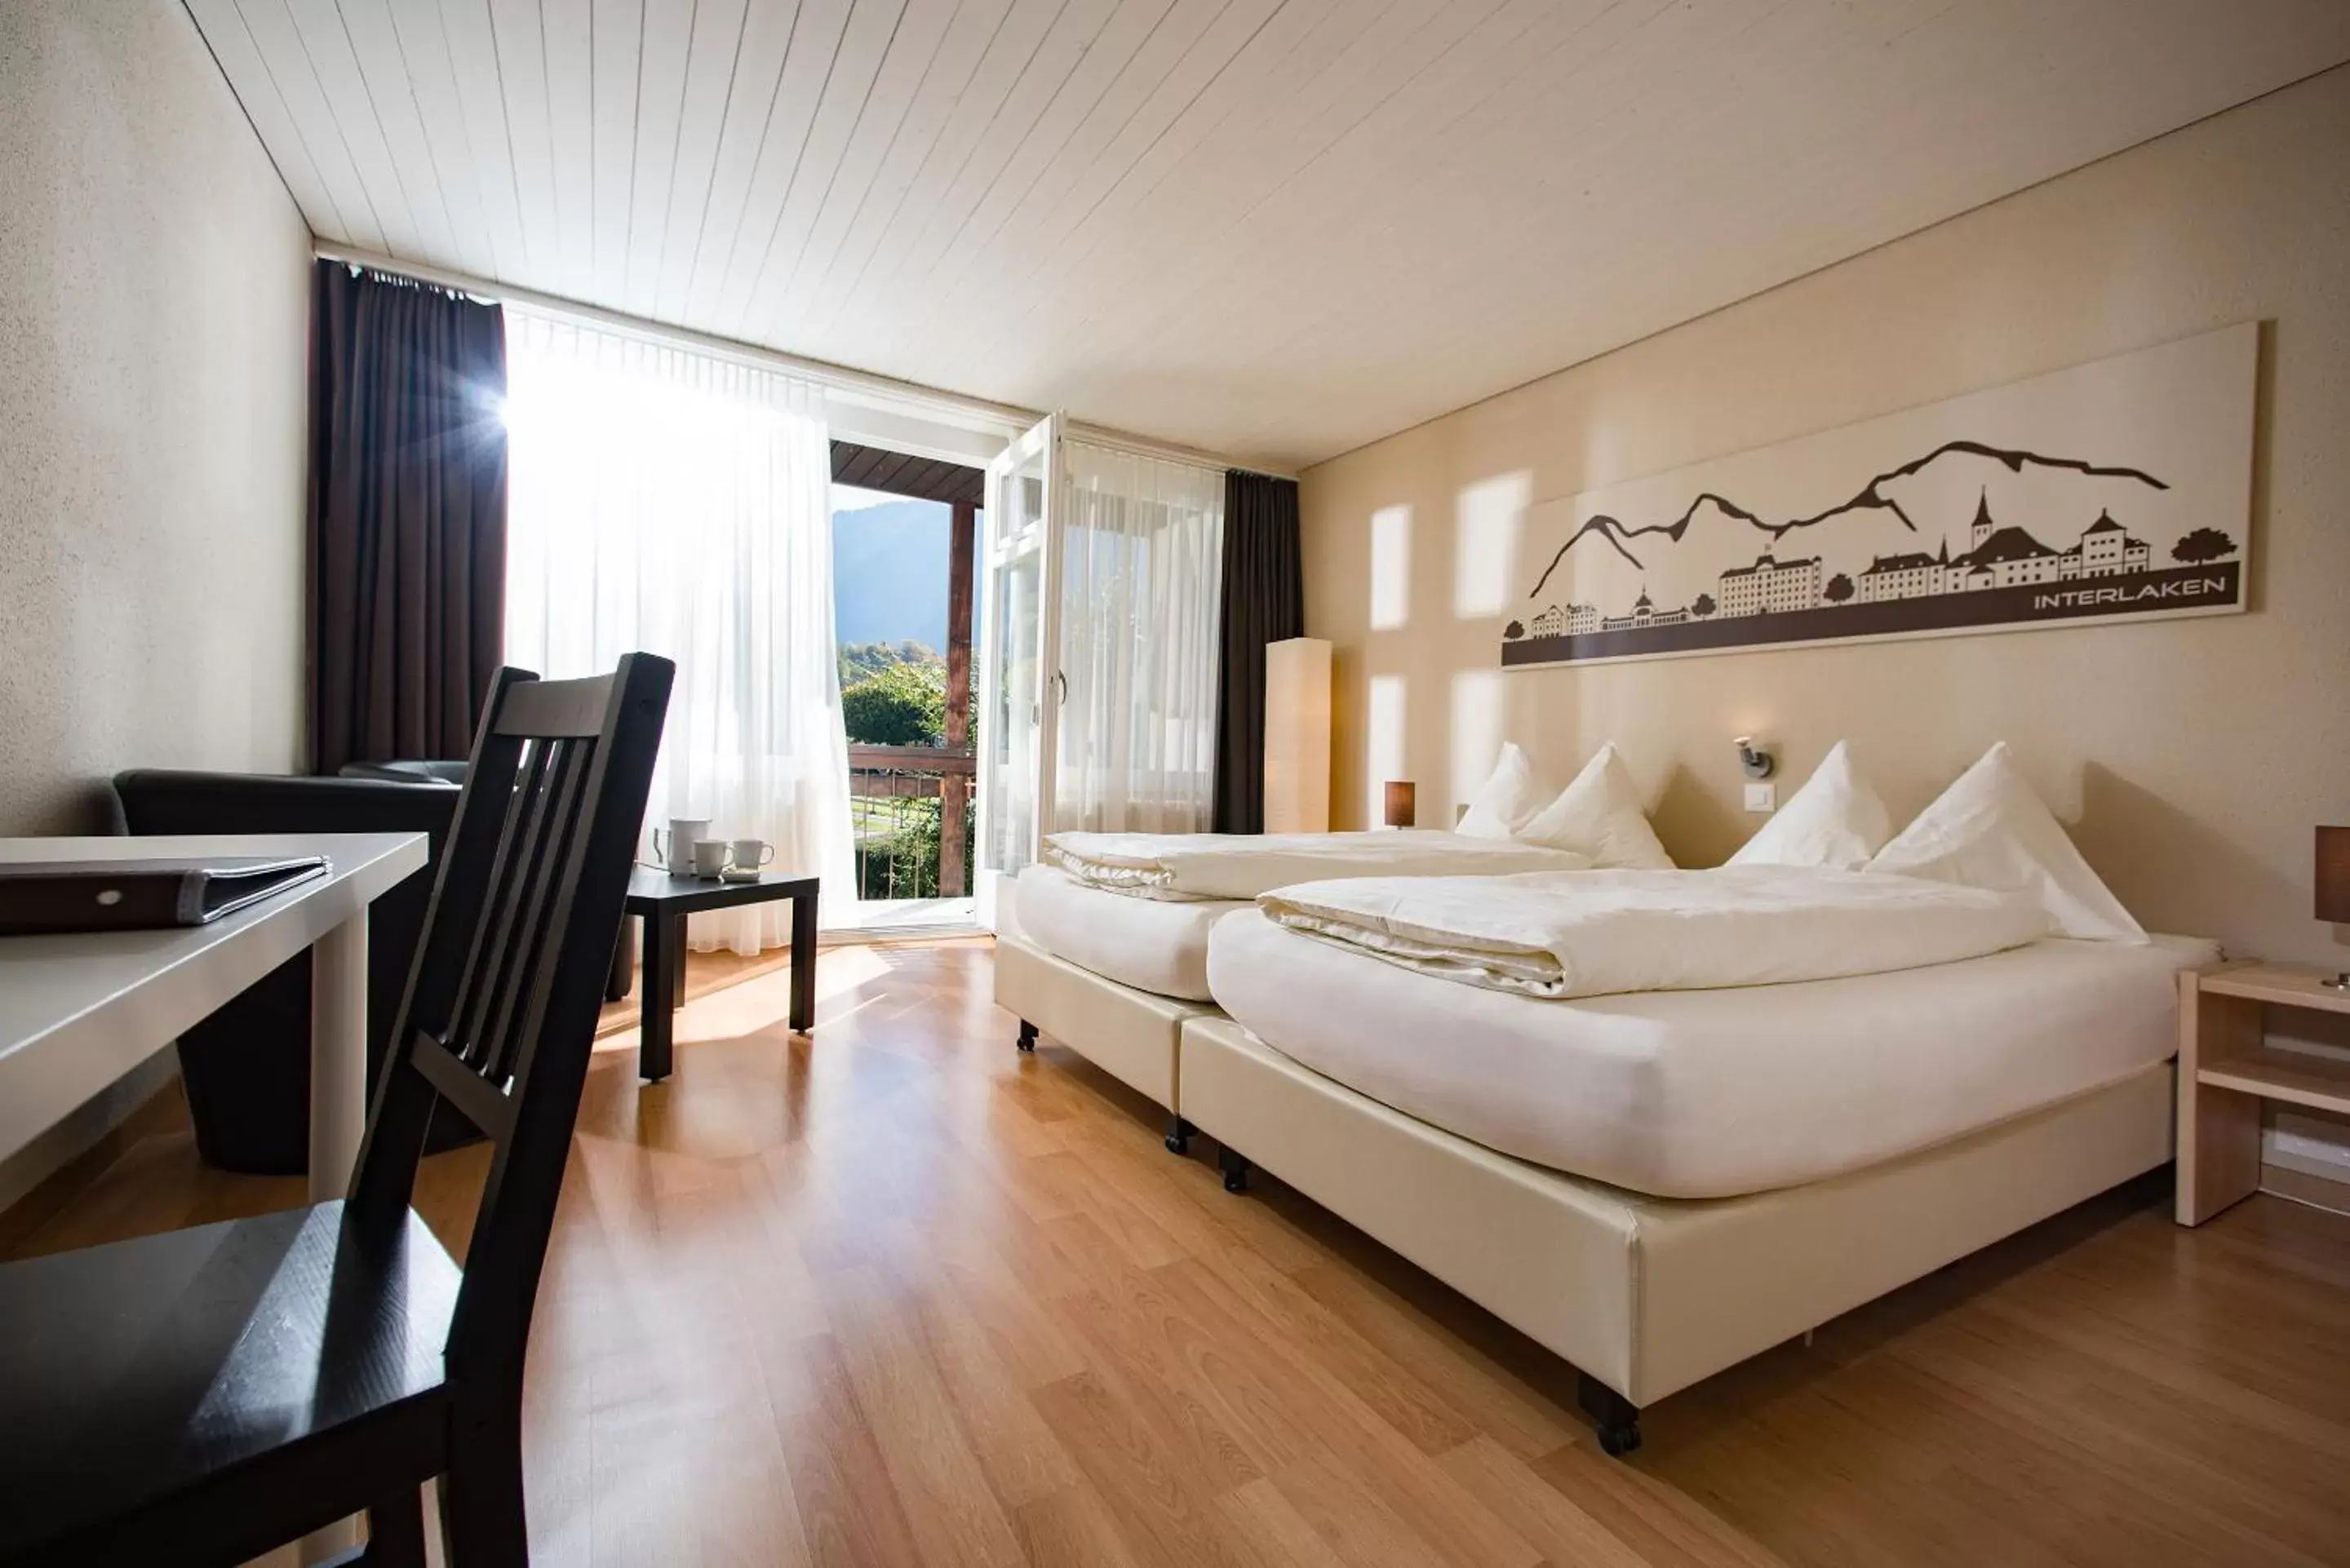 Bedroom in Jungfrau Hotel